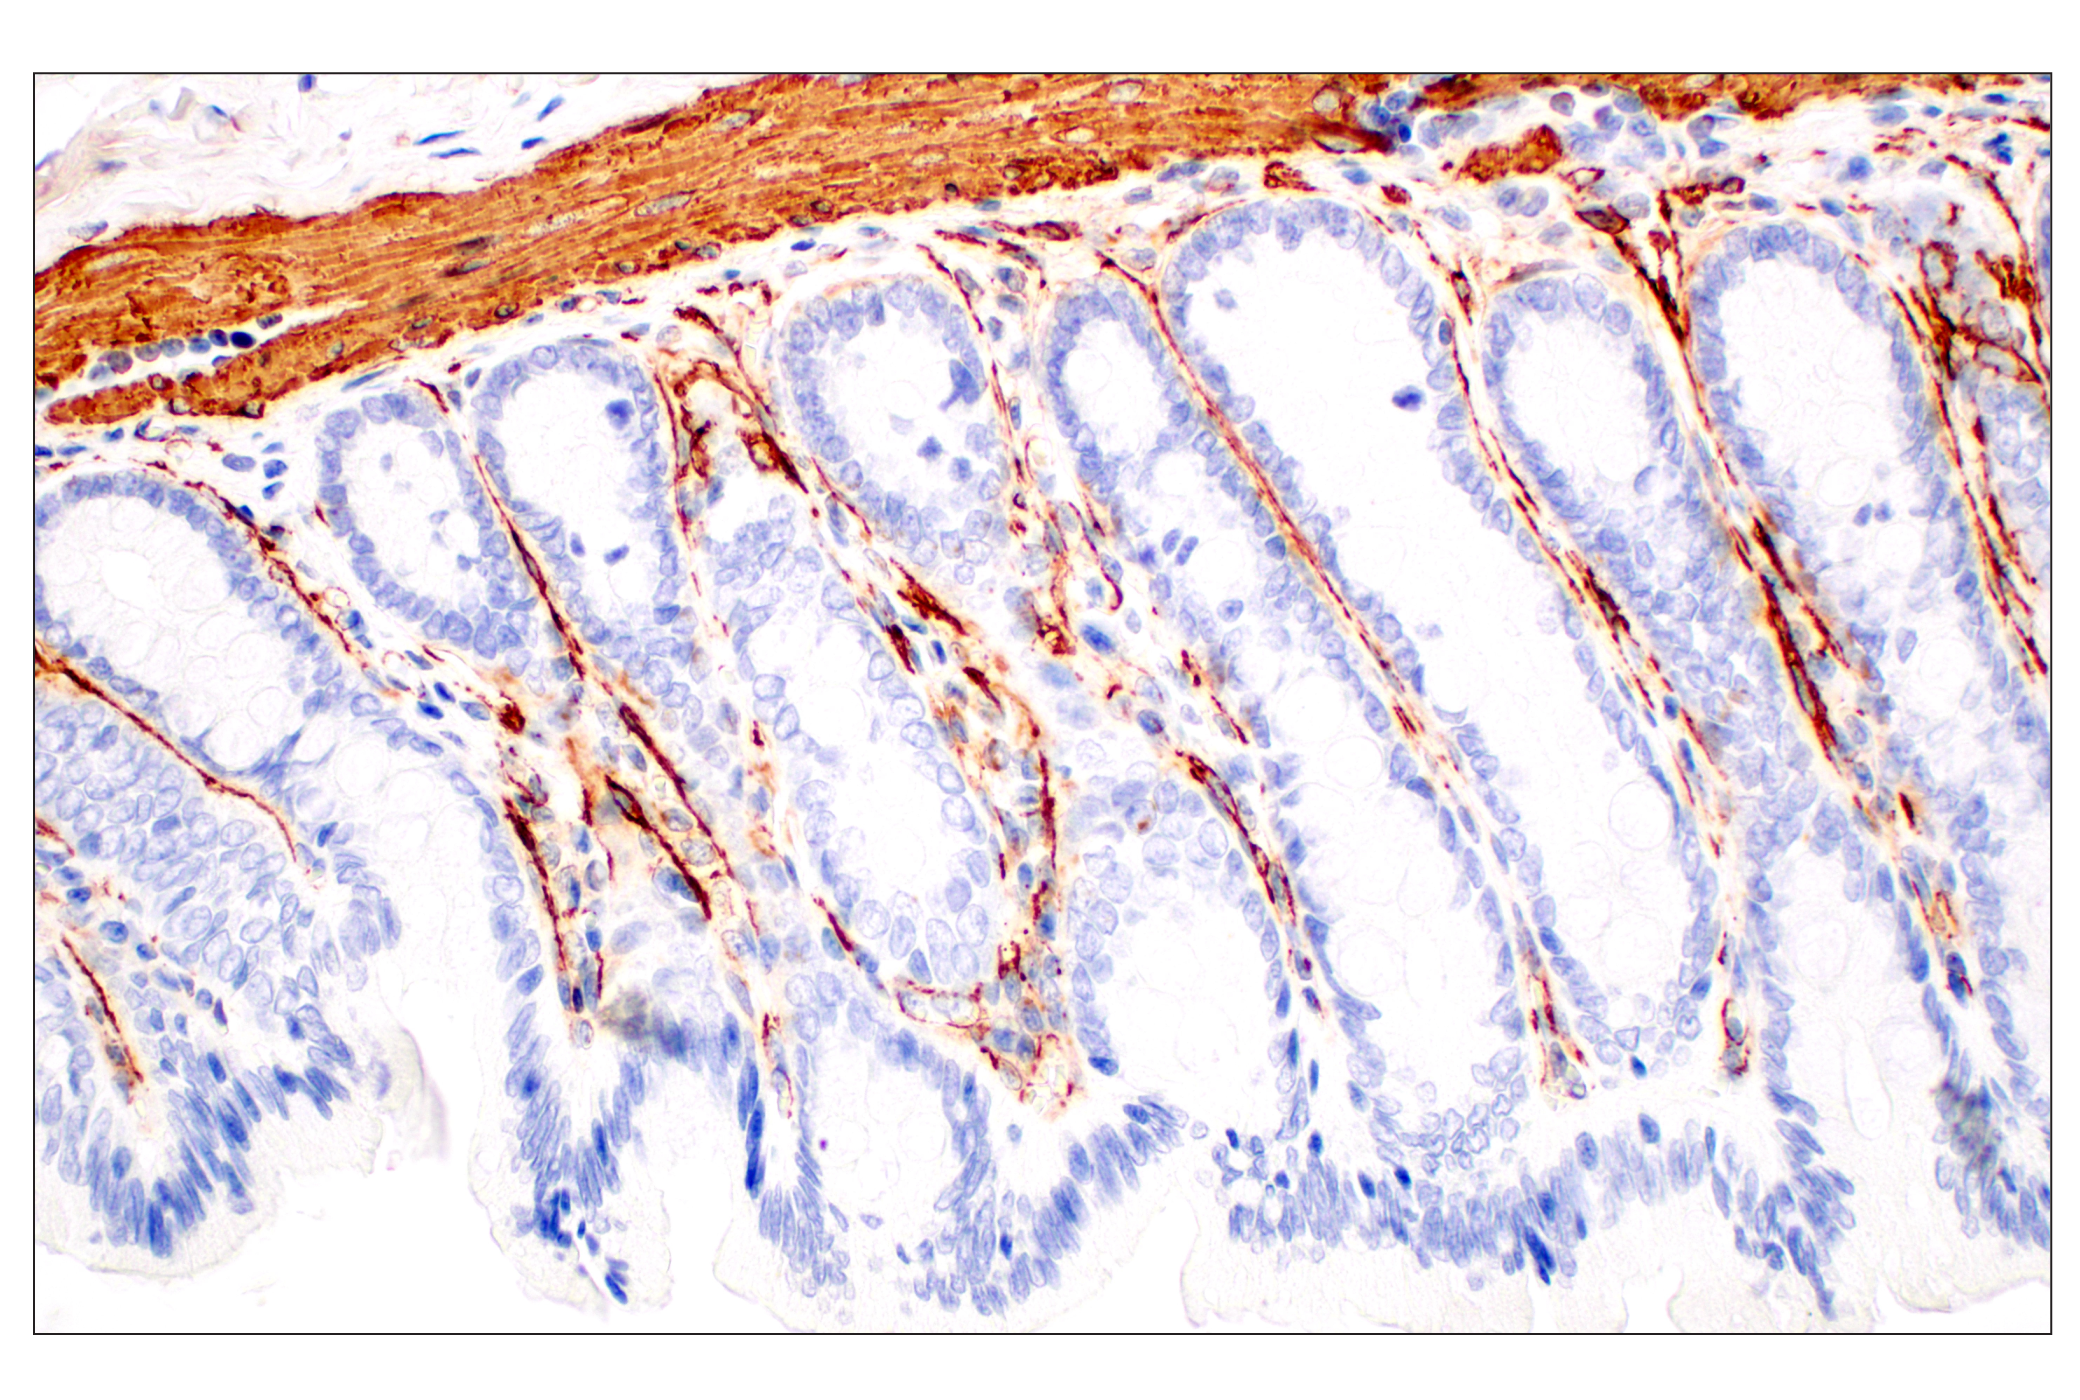  Image 47: TGF-β Fibrosis Pathway Antibody Sampler Kit